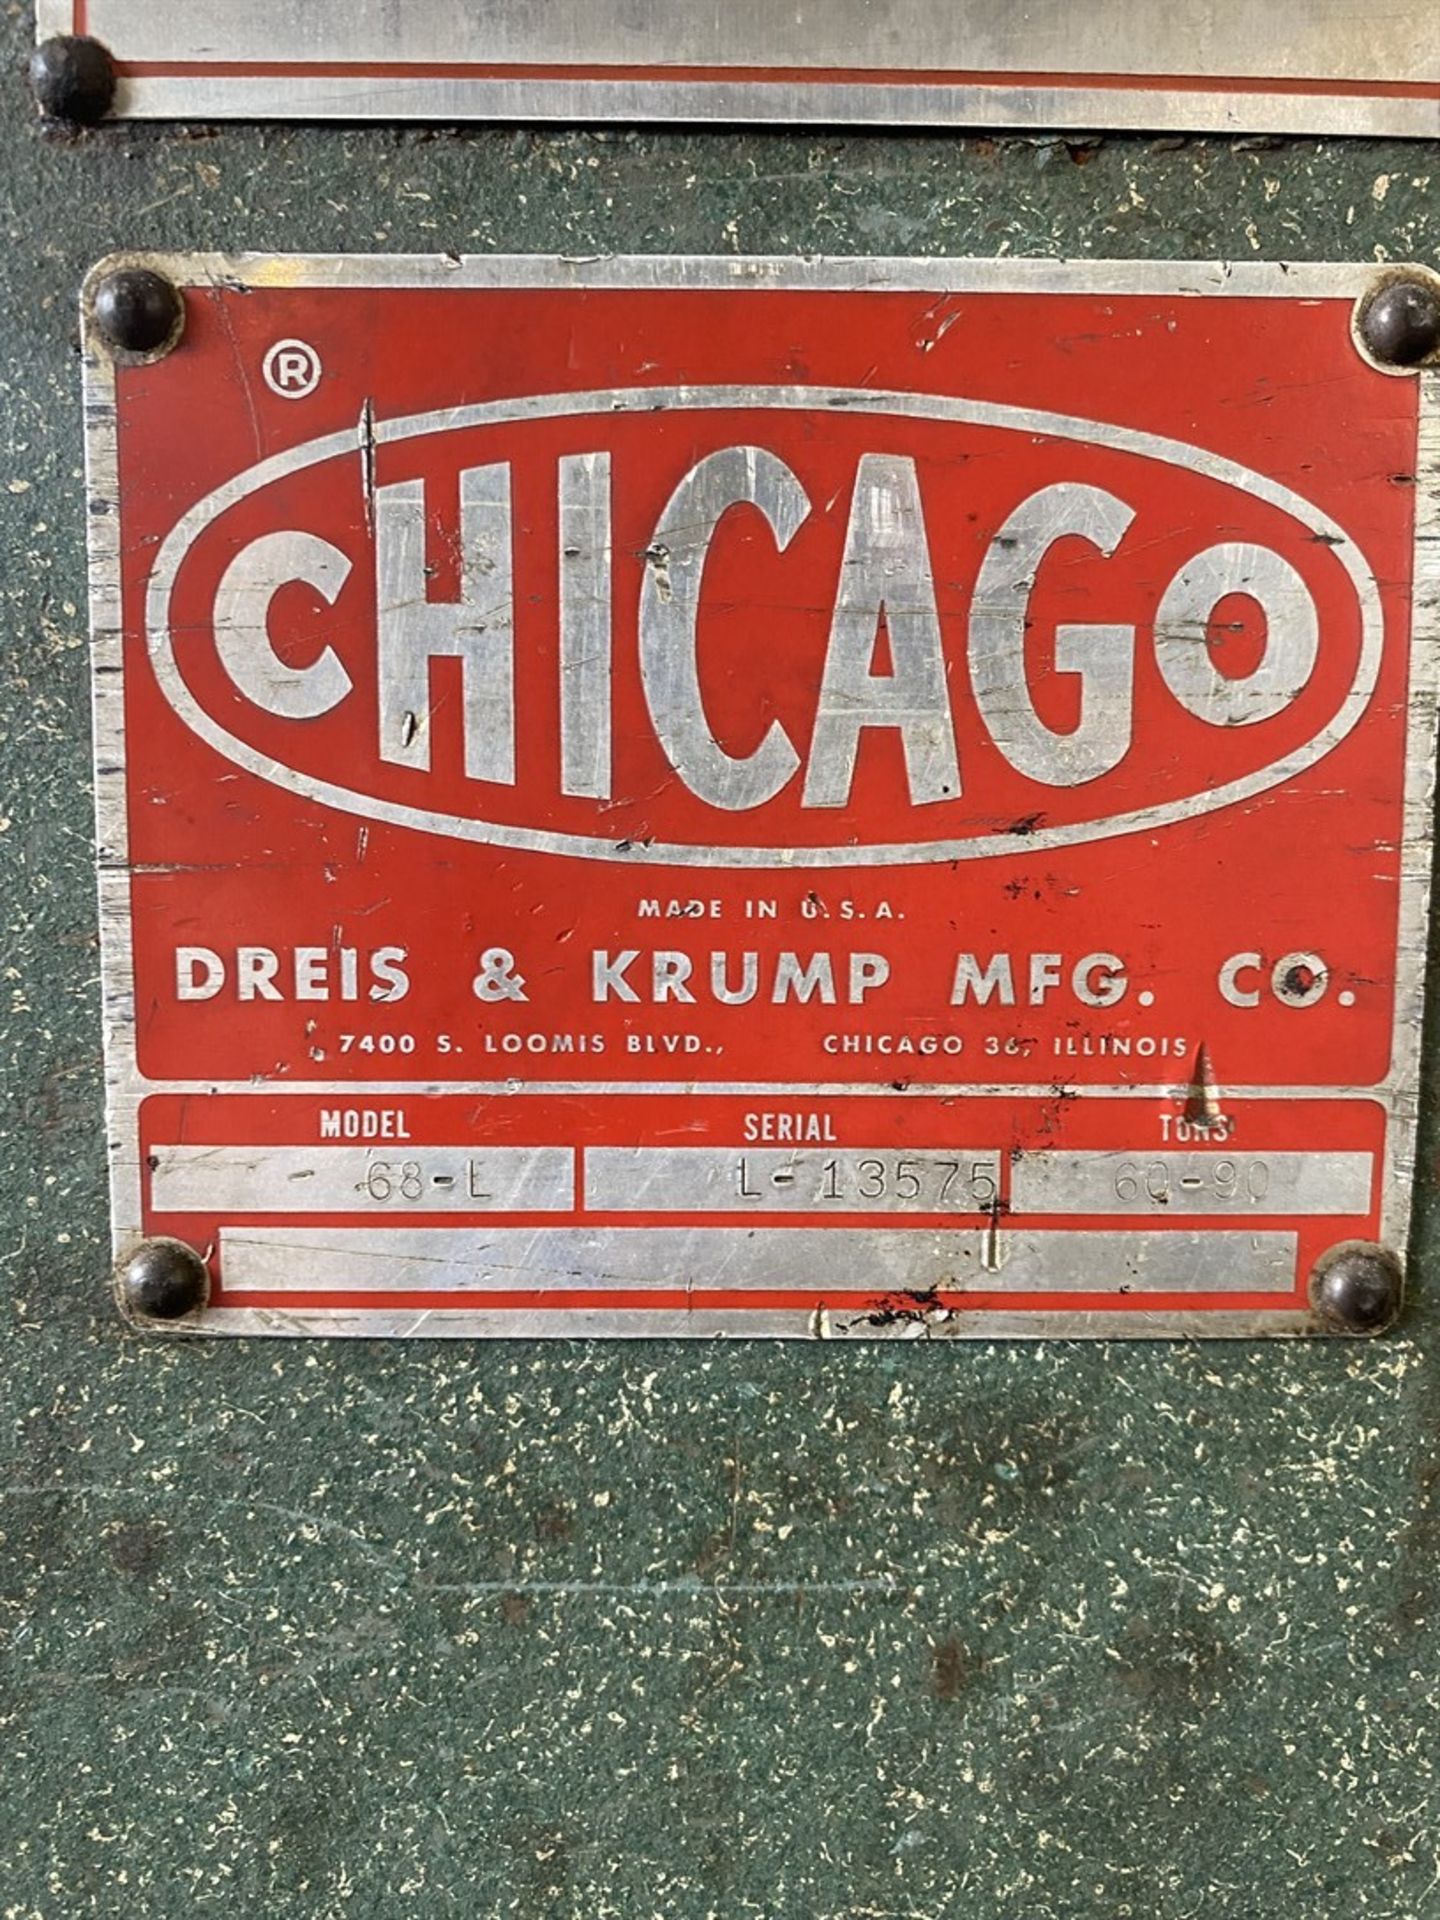 CHICAGO DREIS & KRUMP 68L Press Brake, s/n L13575, 90 Ton Capacity, 8’ Bed Length, 78” Between - Image 3 of 6